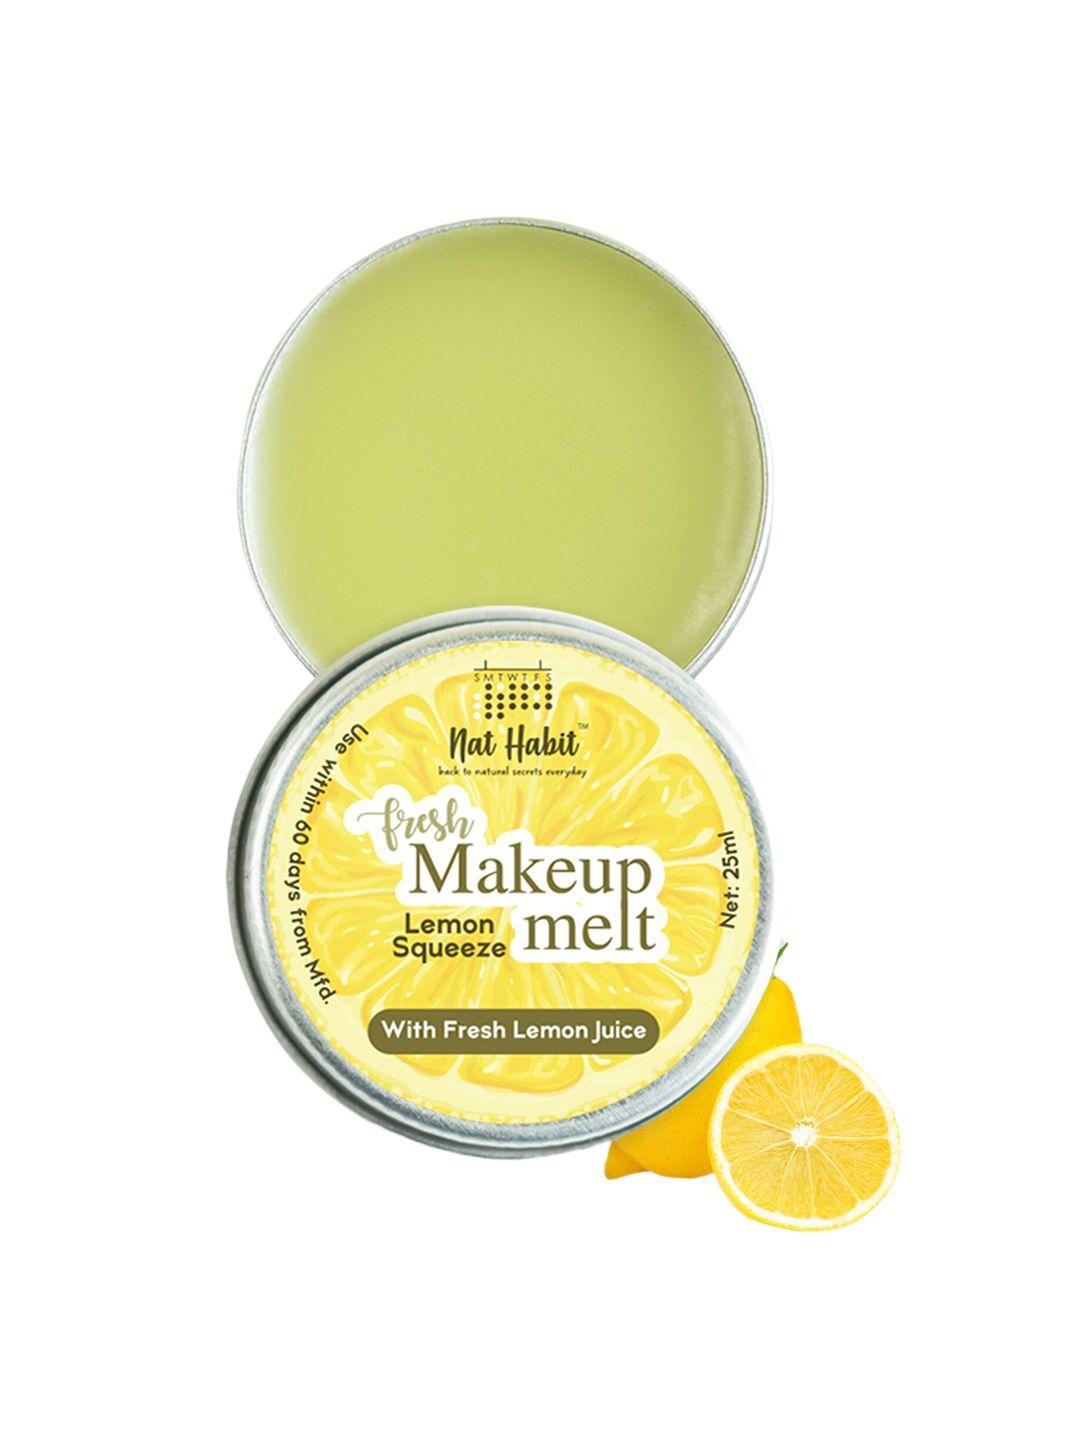 nat habit fresh lemon squeeze makeup melt remover with fresh lemon juice - 25 ml